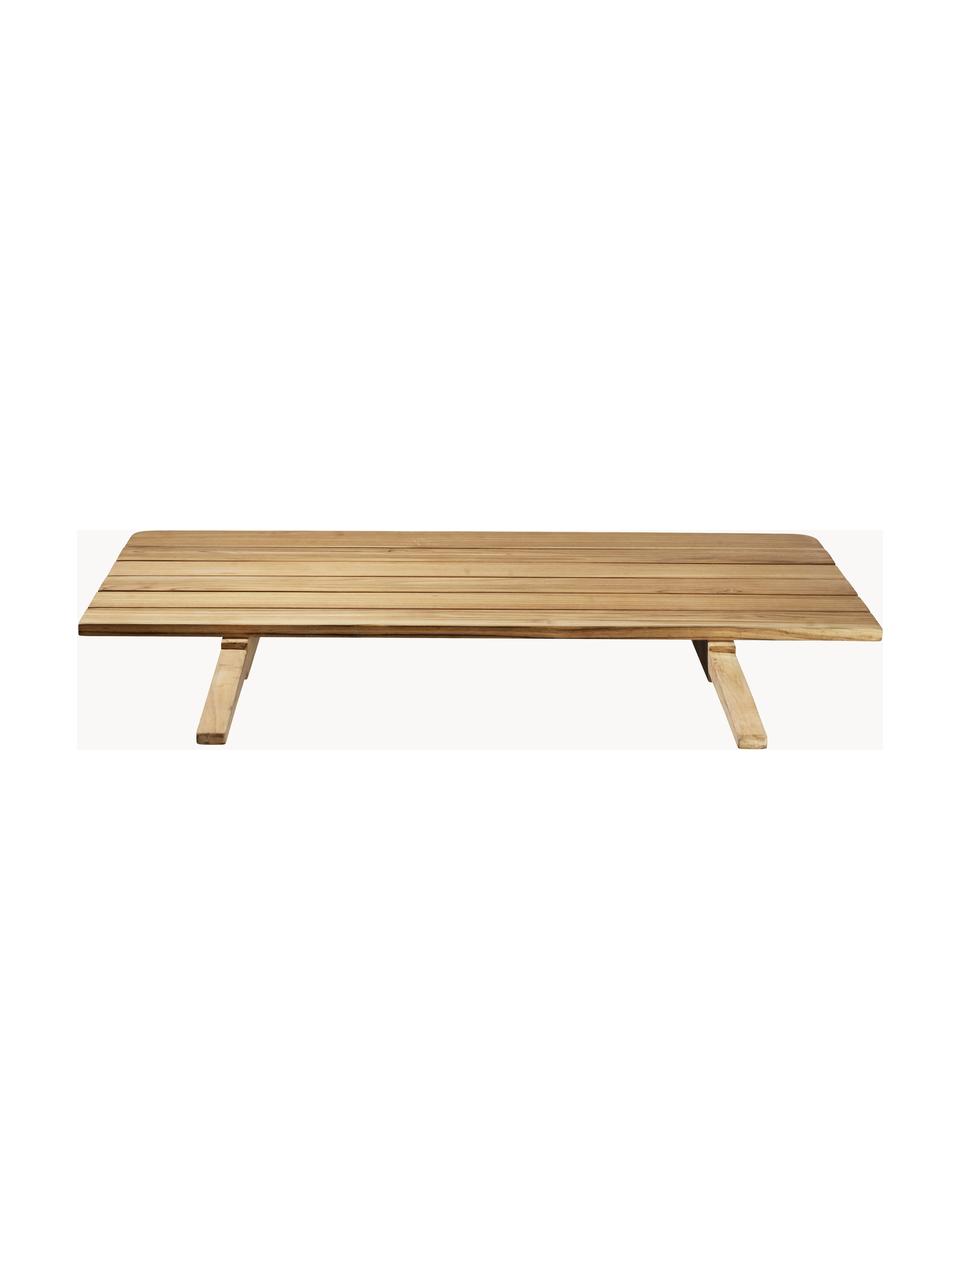 Prodlužovací deska z teakového dřeva Sammen, Teakové dřevo

Tento produkt je vyroben z udržitelných zdrojů dřeva s certifikací FSC®., Teakové dřevo, Š 78 cm, H 90 cm